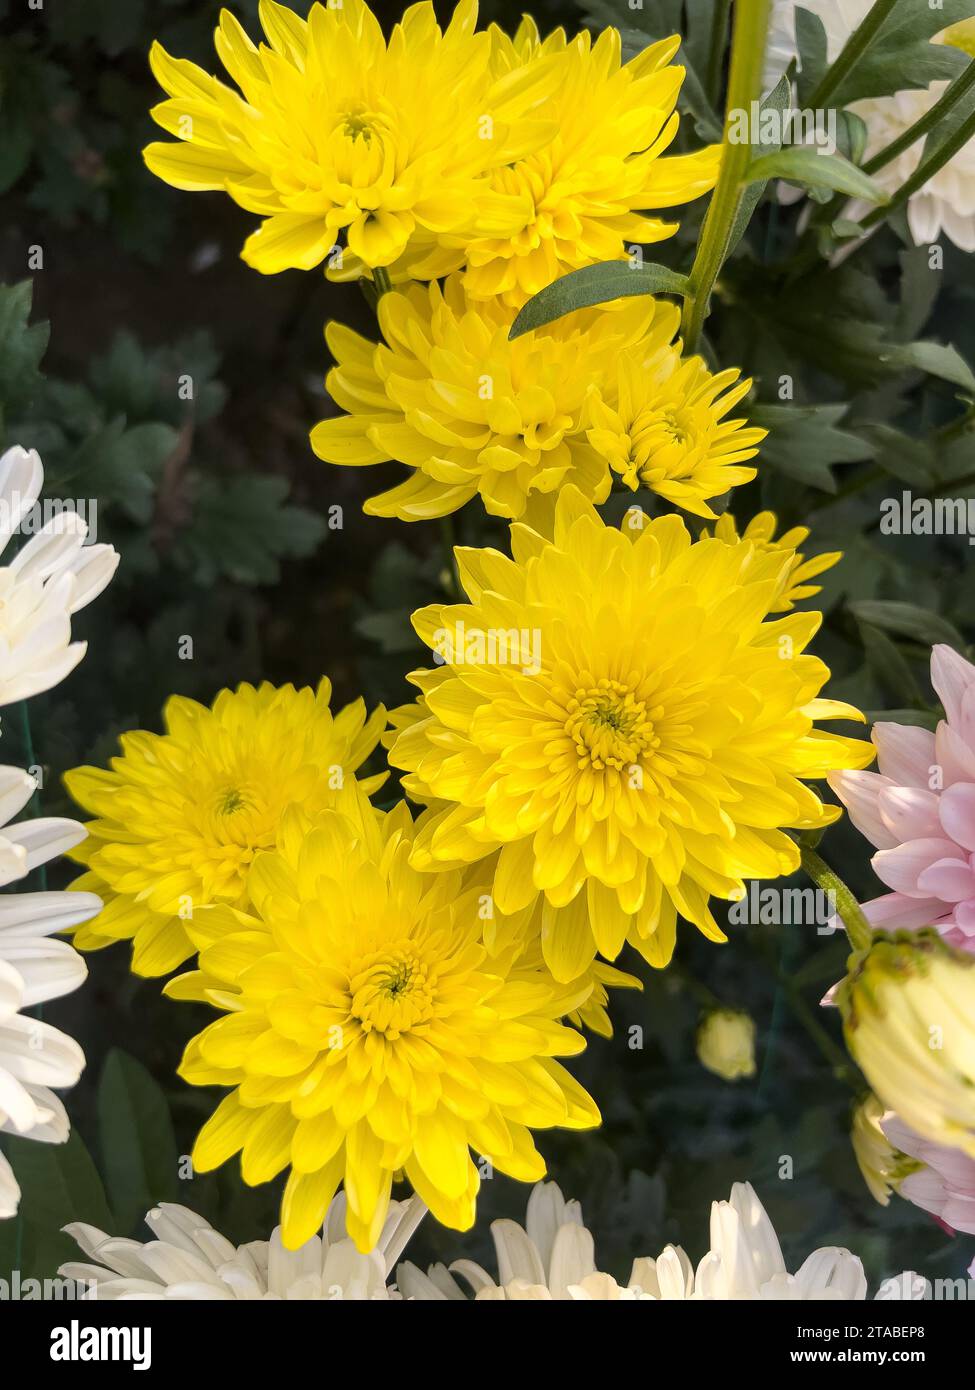 Belles fleurs jaunes de chrysanthème dans le jardin closeup Banque D'Images